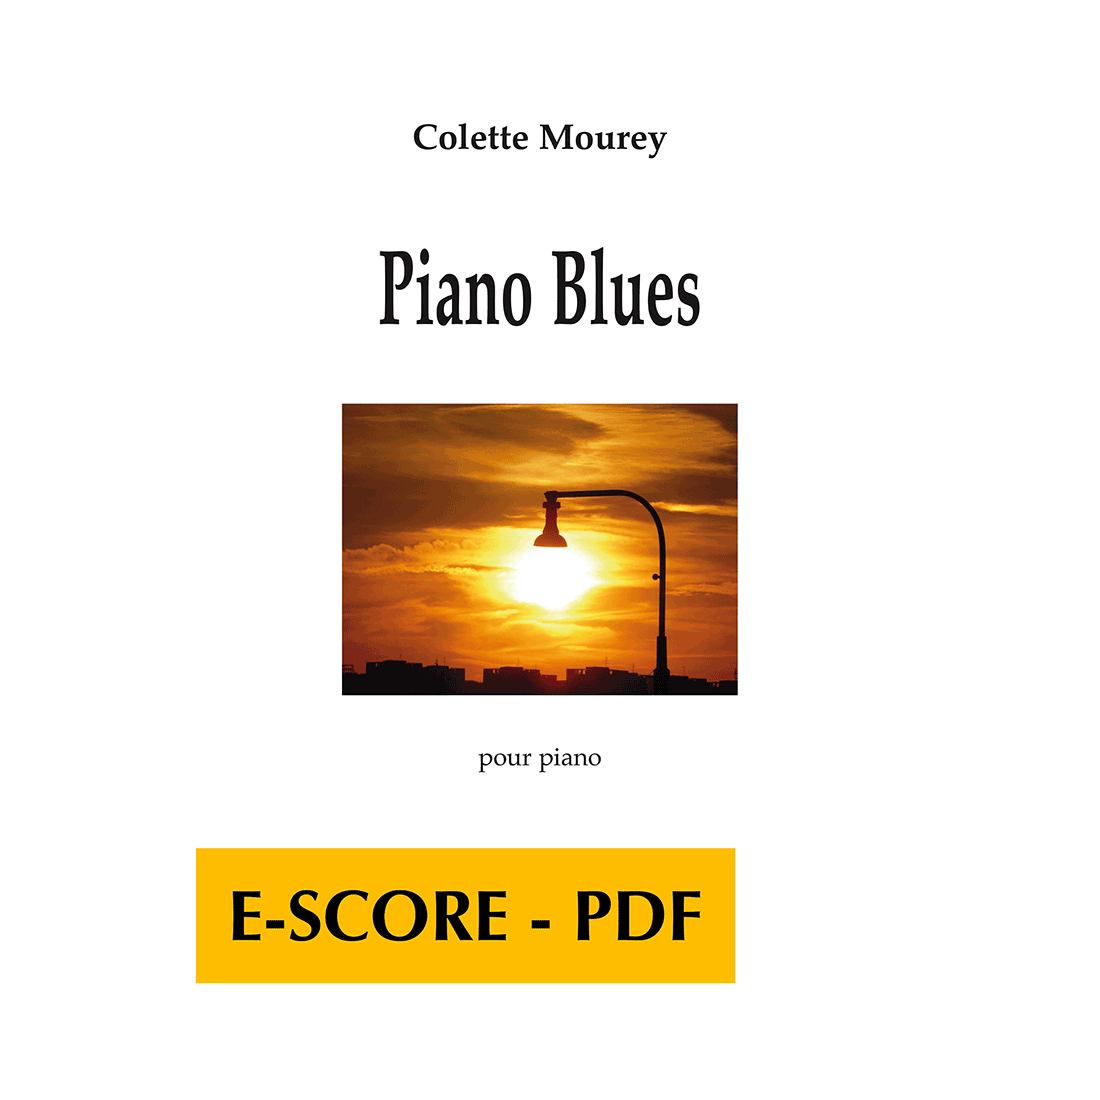 Piano Blues pour piano - E-score PDF